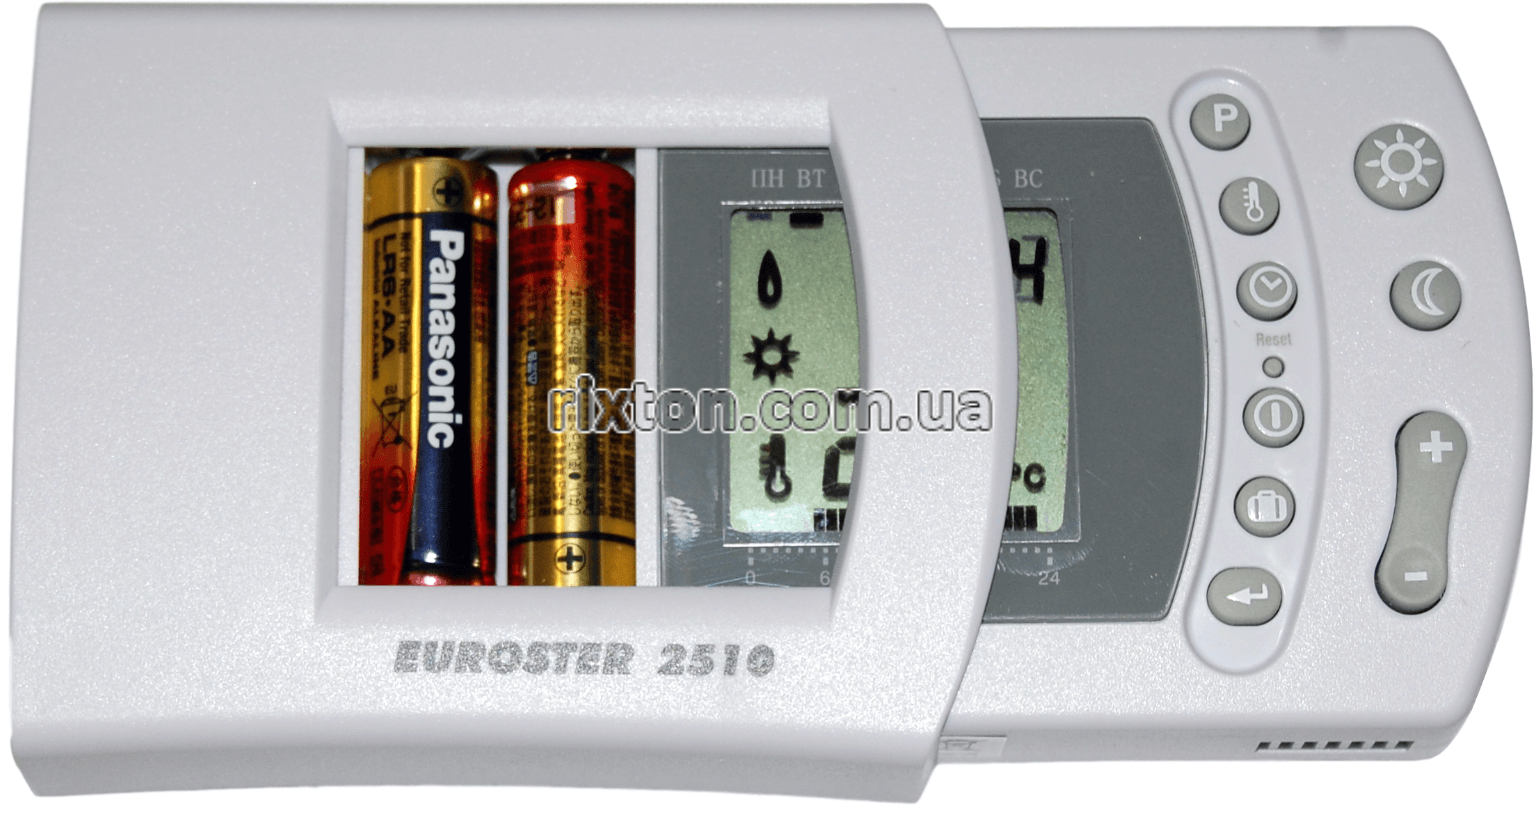 Кімнатний регулятор температури Euroster 2510 TXRX